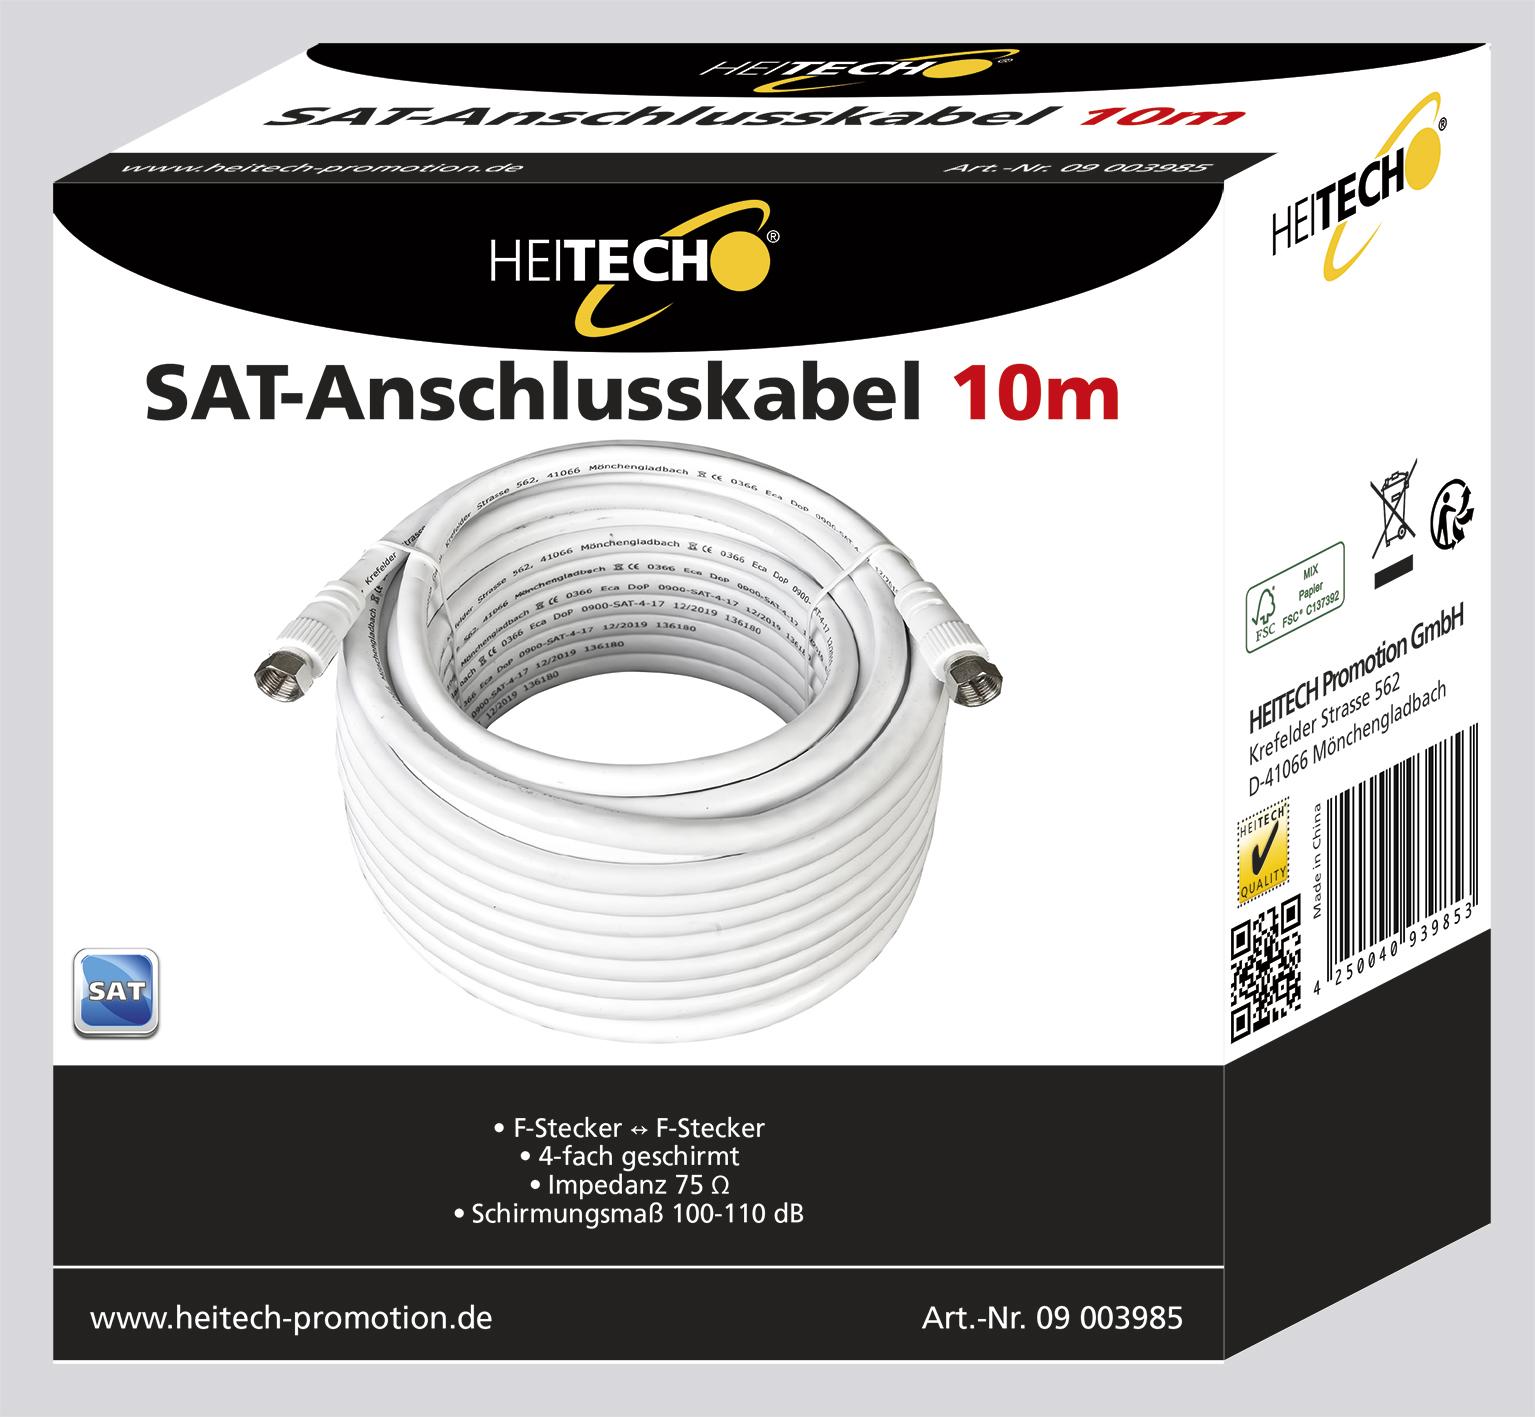 Heitech SAT-Anschlusskabel - in verschiedenen Ausführungen